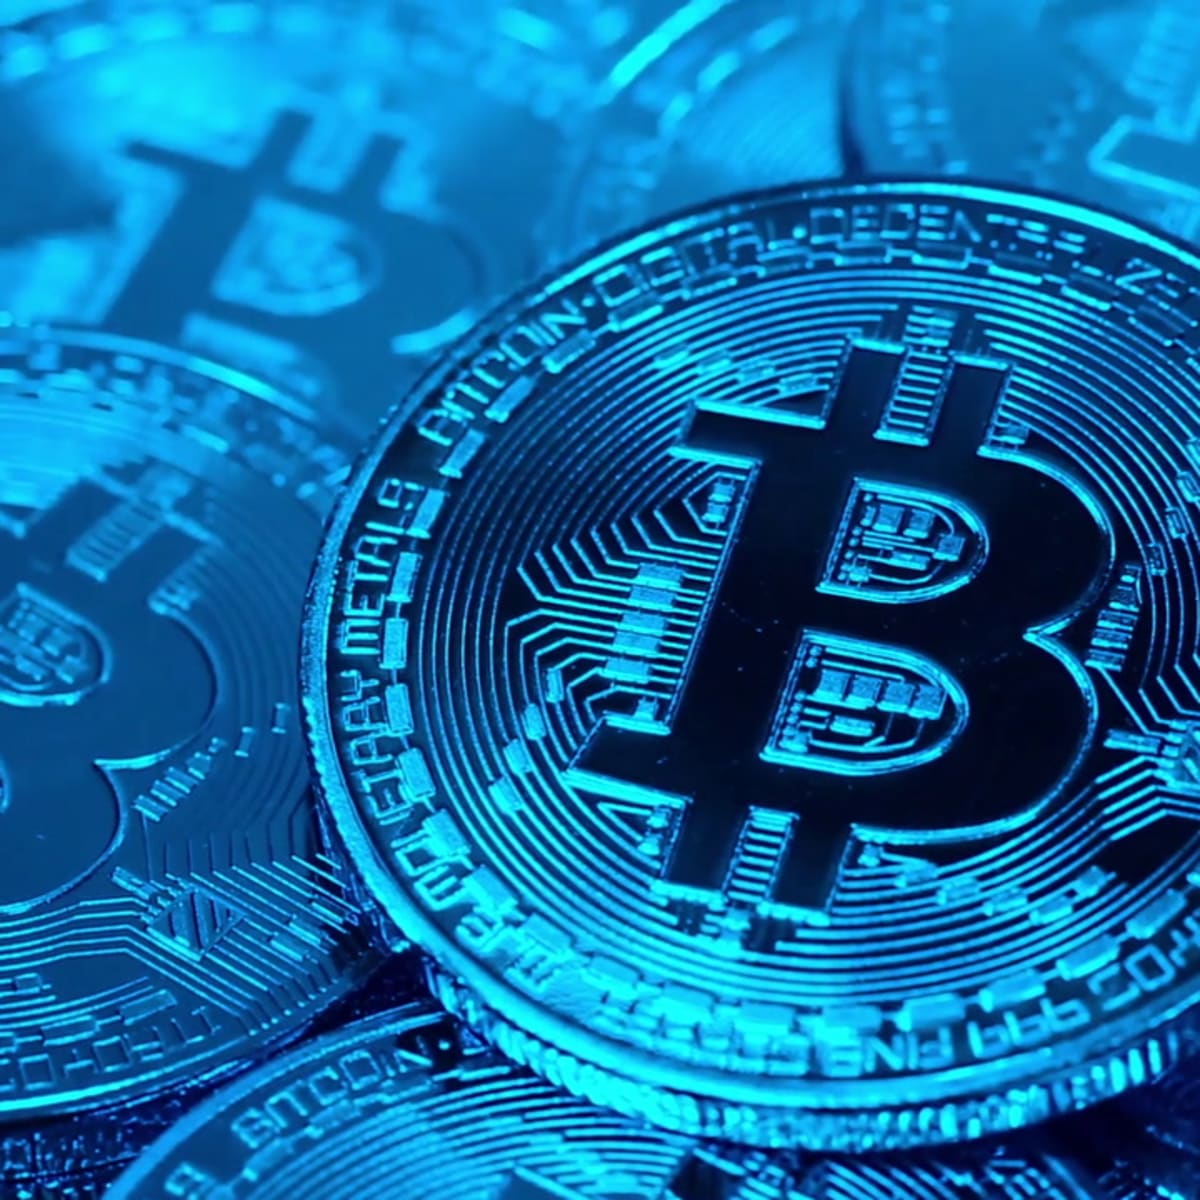 să investească în ethereum sau în bitcoin robot de tranzactionare criptomonetară cum să cumpărați bitcoin și să schimbați